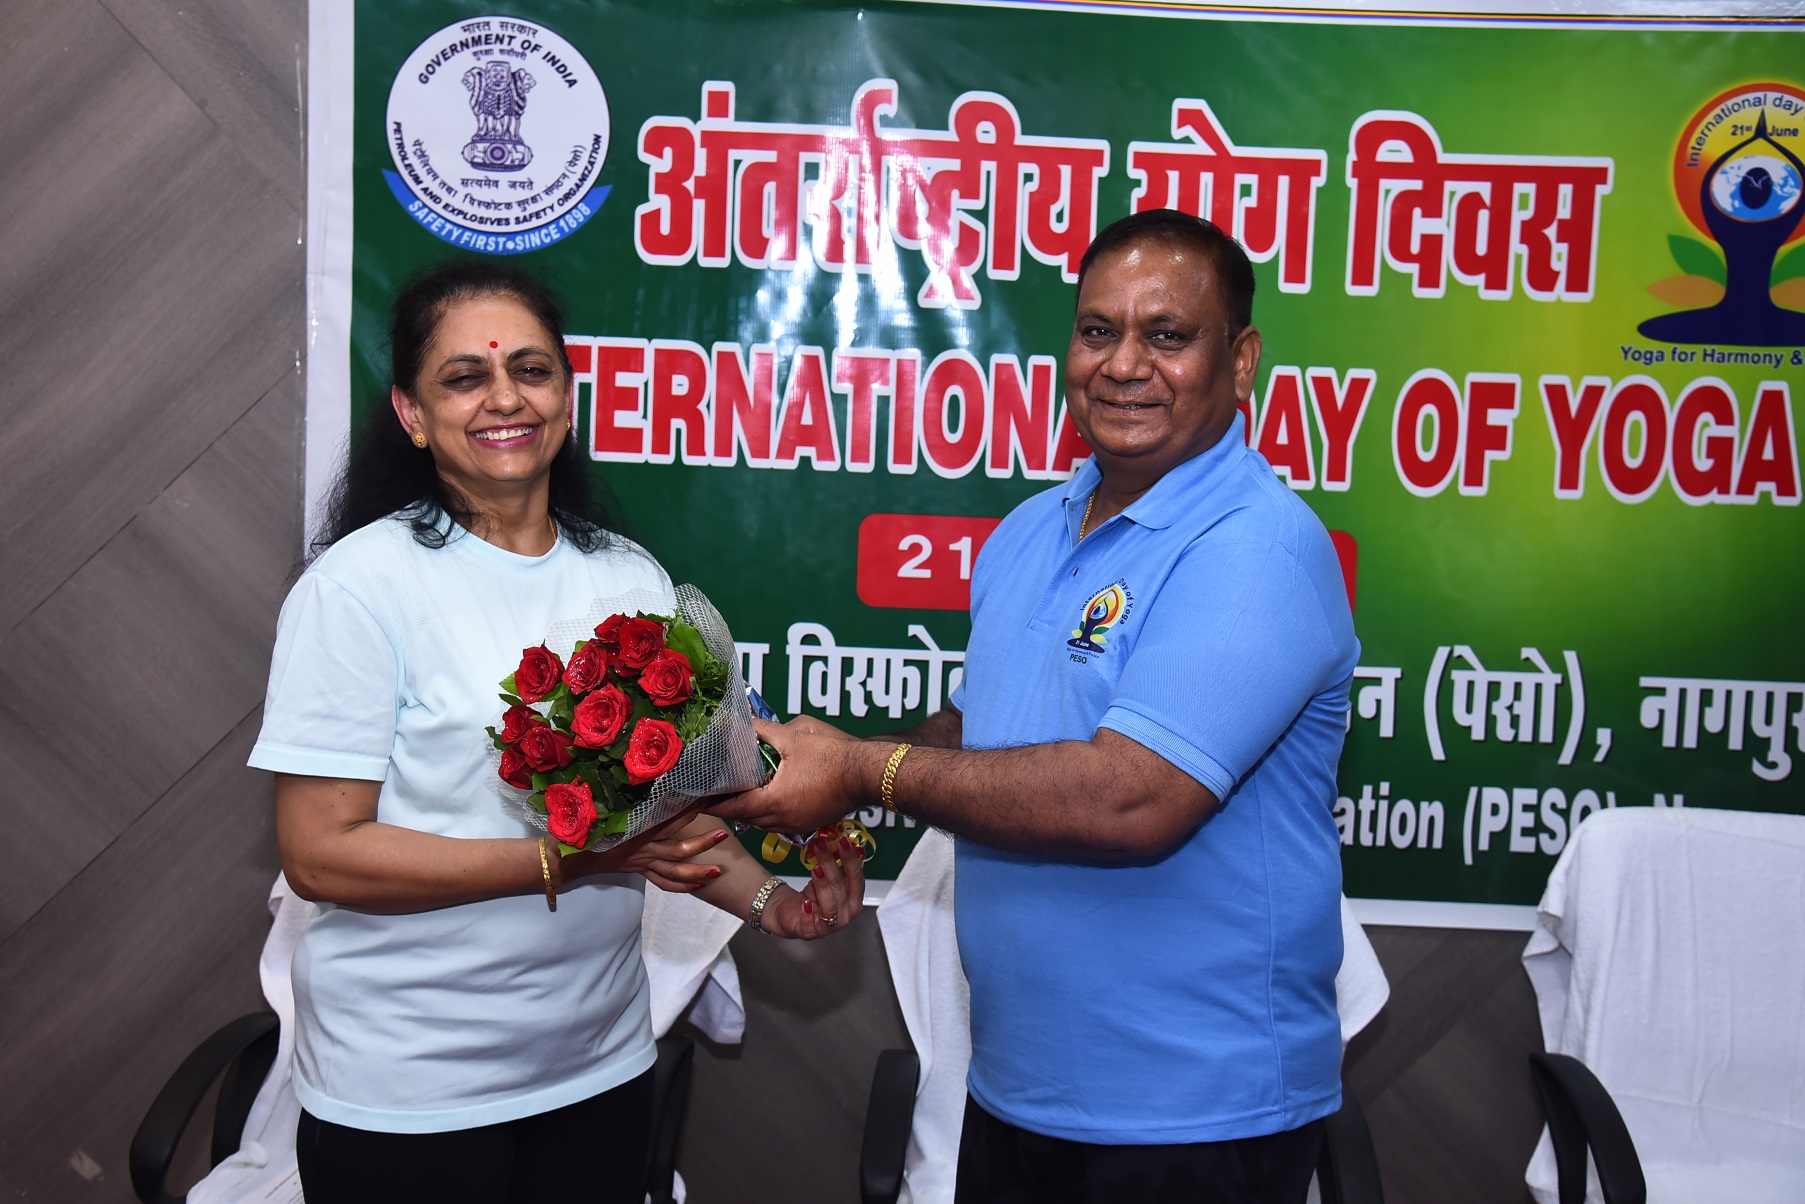 श्री पी कुमार, मुख्य विस्फोटक नियंत्रक, 21 जून 22 को अंतर्राष्ट्रीय योग दिवस समारोह में योग विशेषज्ञ श्रीमती सुजाता कुलकर्णी का स्वागत करते हुए